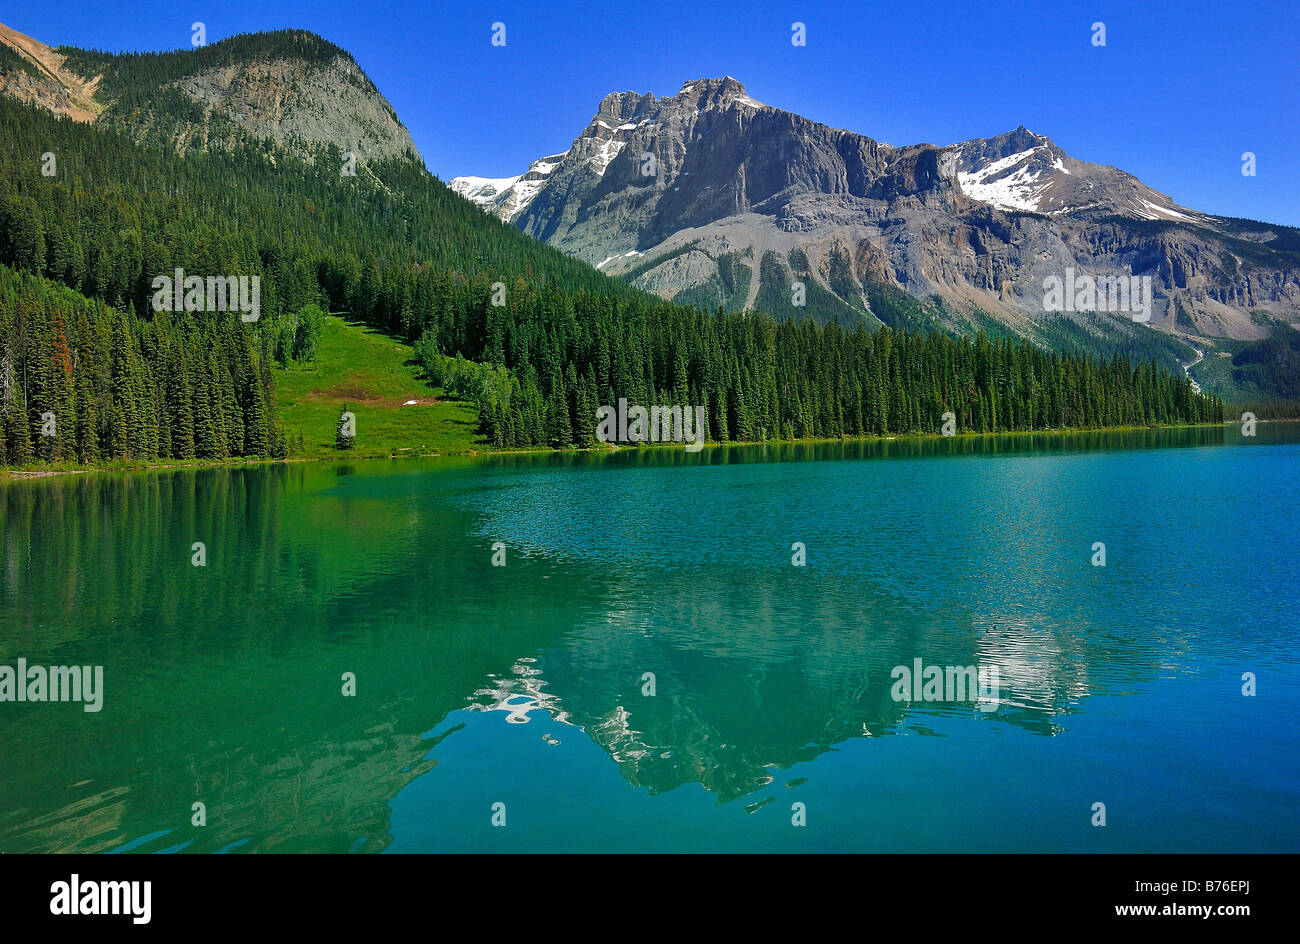 Vue générale du lac Emerald, dans le parc national Yoho, Colombie-Britannique, Canada Banque D'Images